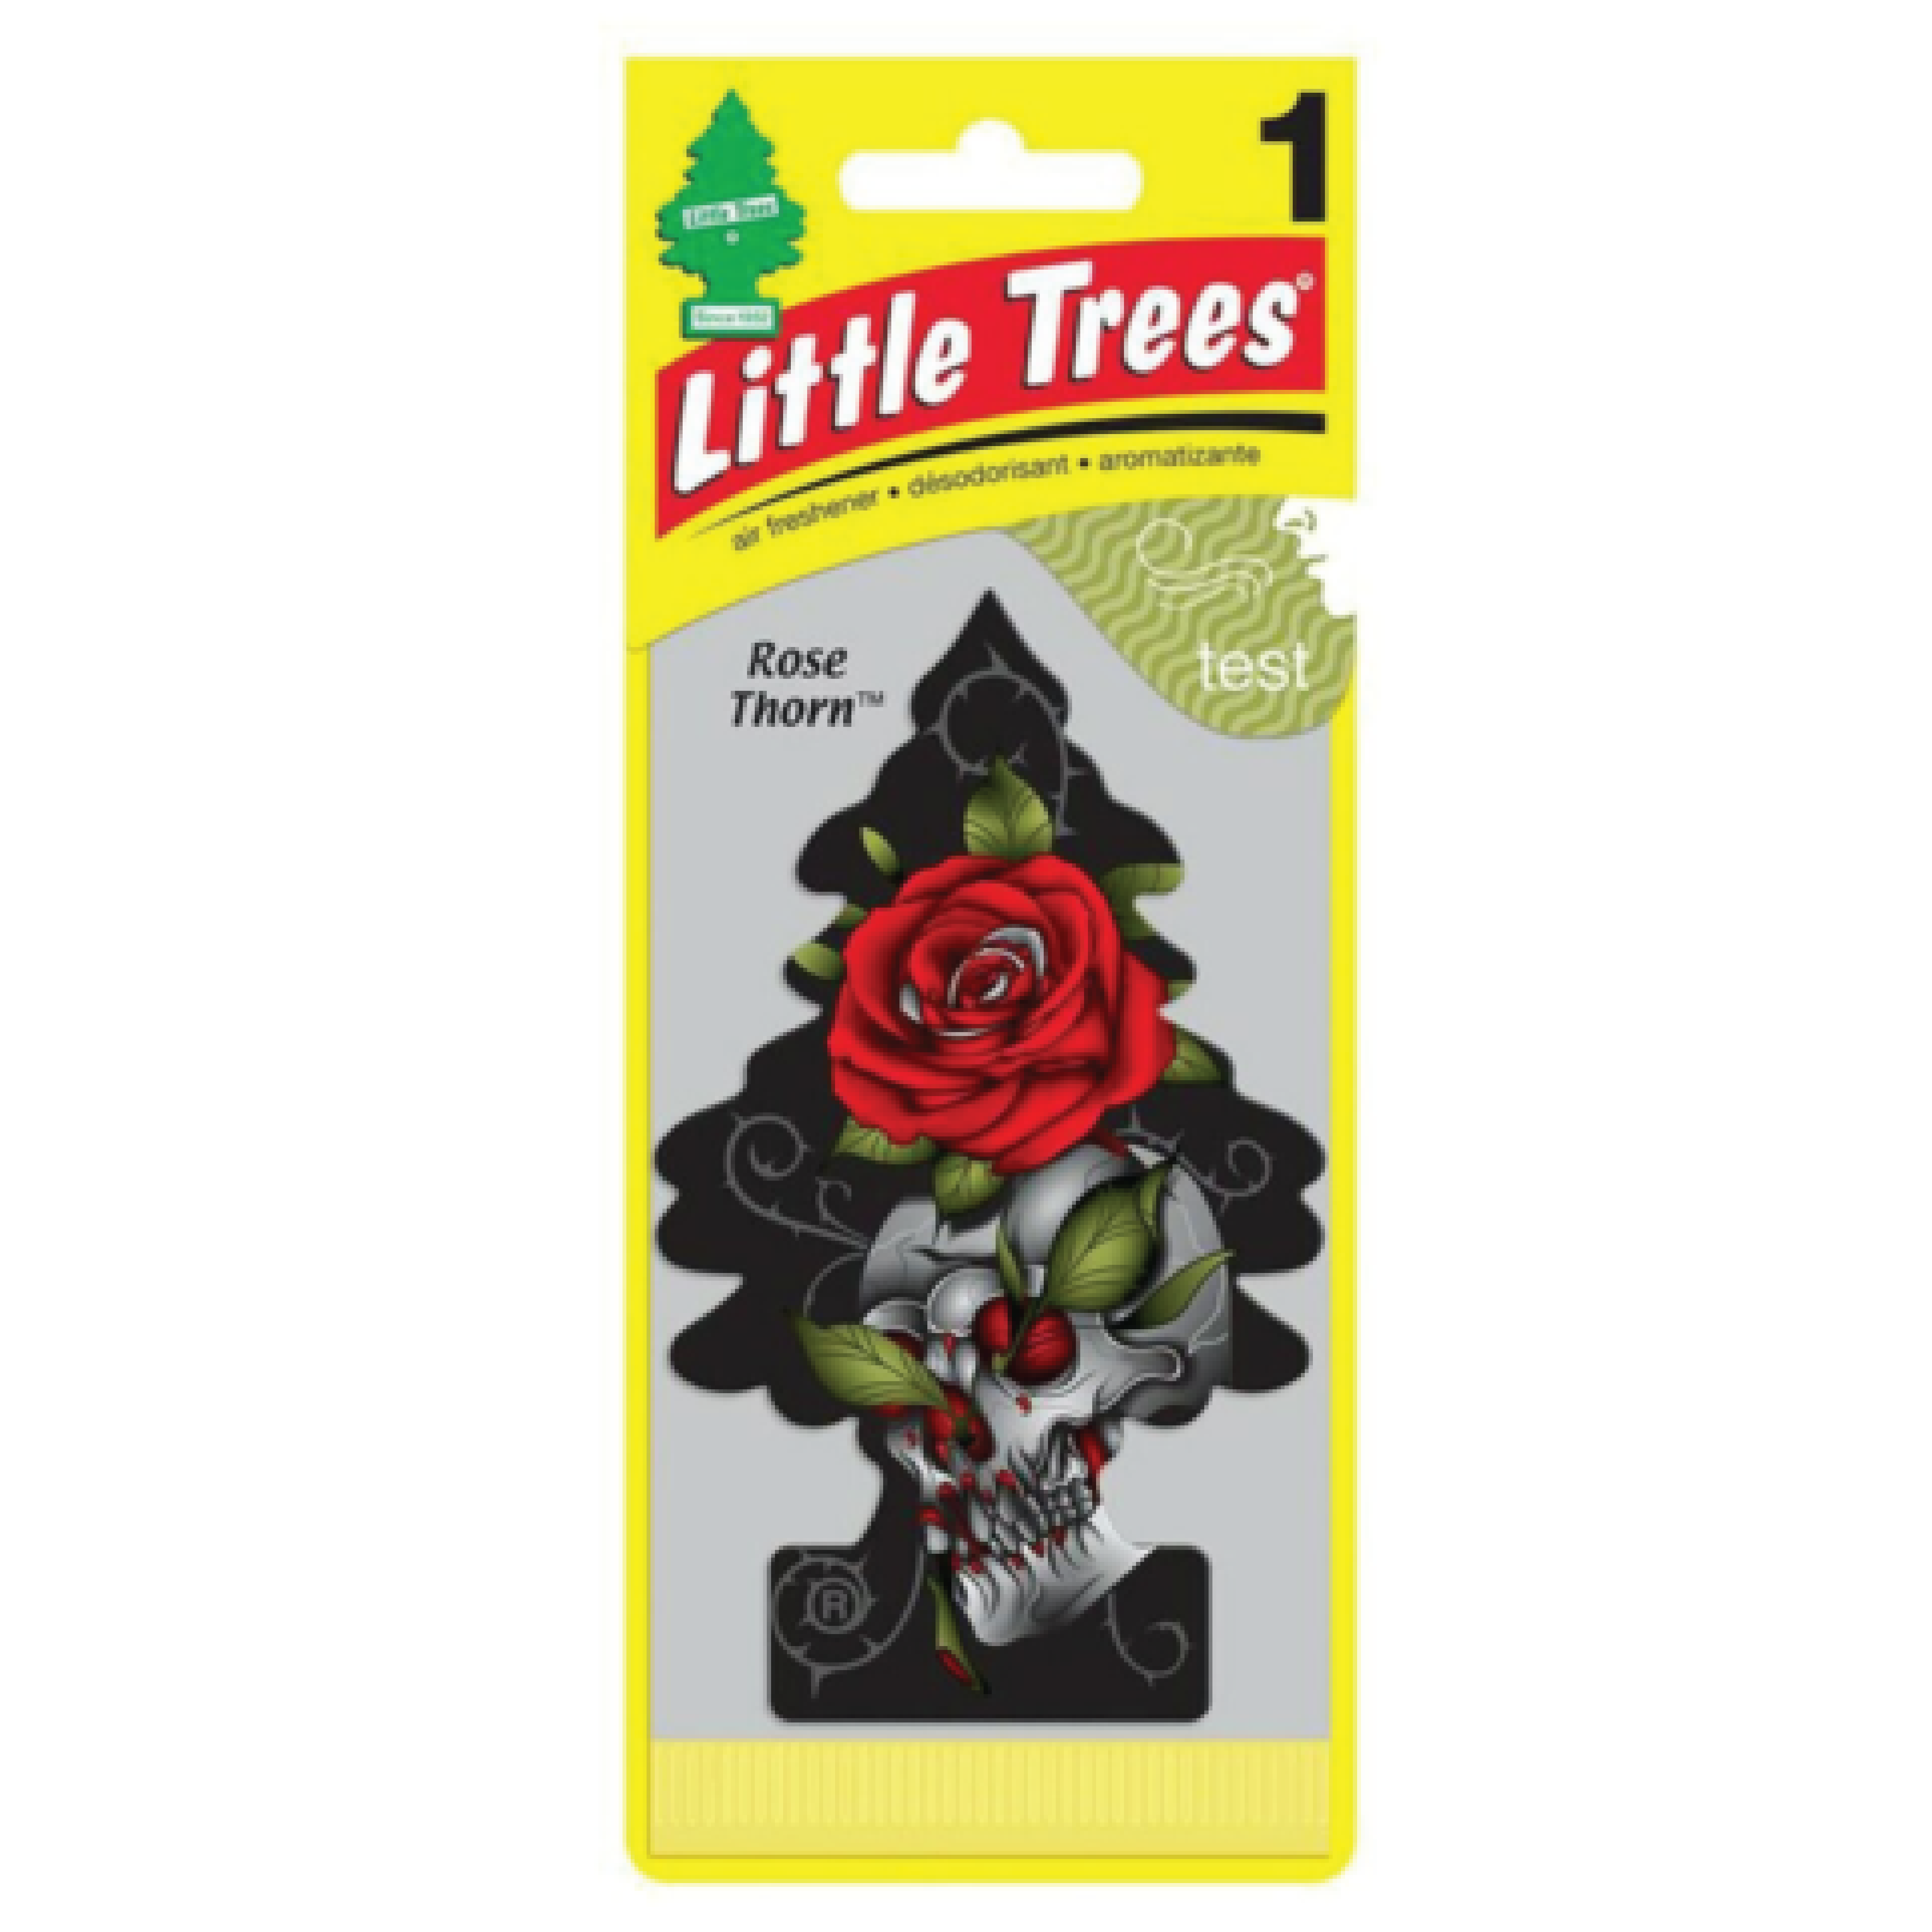 Little Trees Rose Thorn Car Freshener